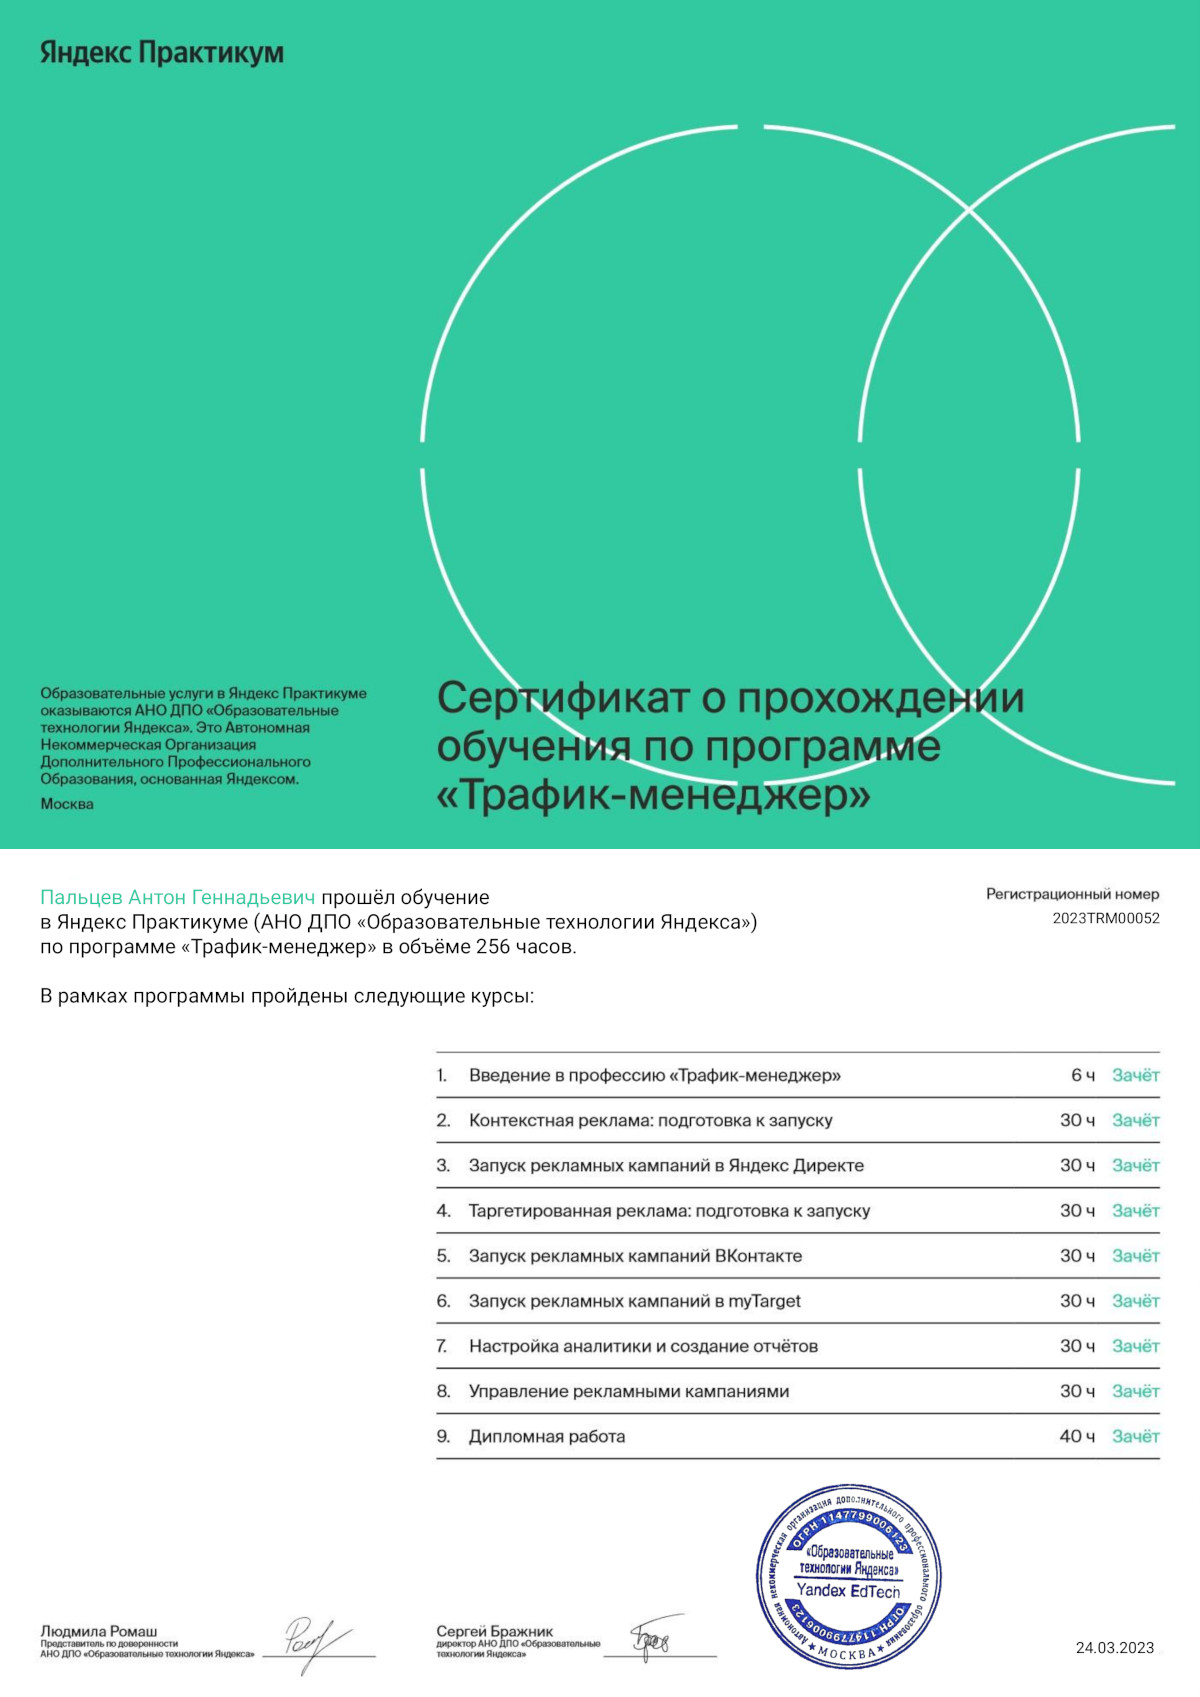 Сертификат о прохождении Яндекс курса по специальности Траффик-менеджер